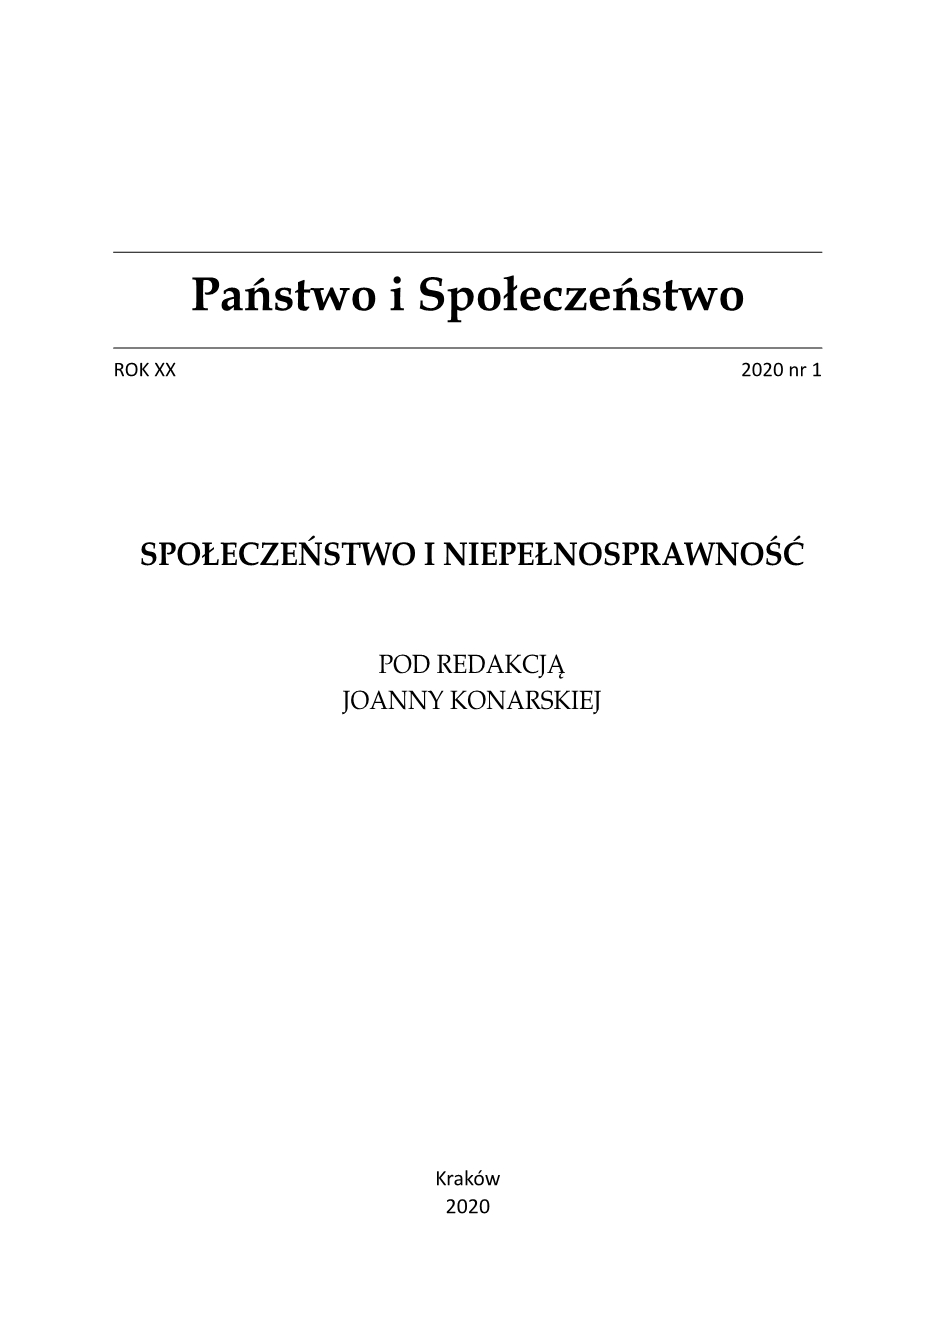 Joanna Konarska, Niepełnosprawność w ujęciu interdyscyplinarnym - book review Cover Image